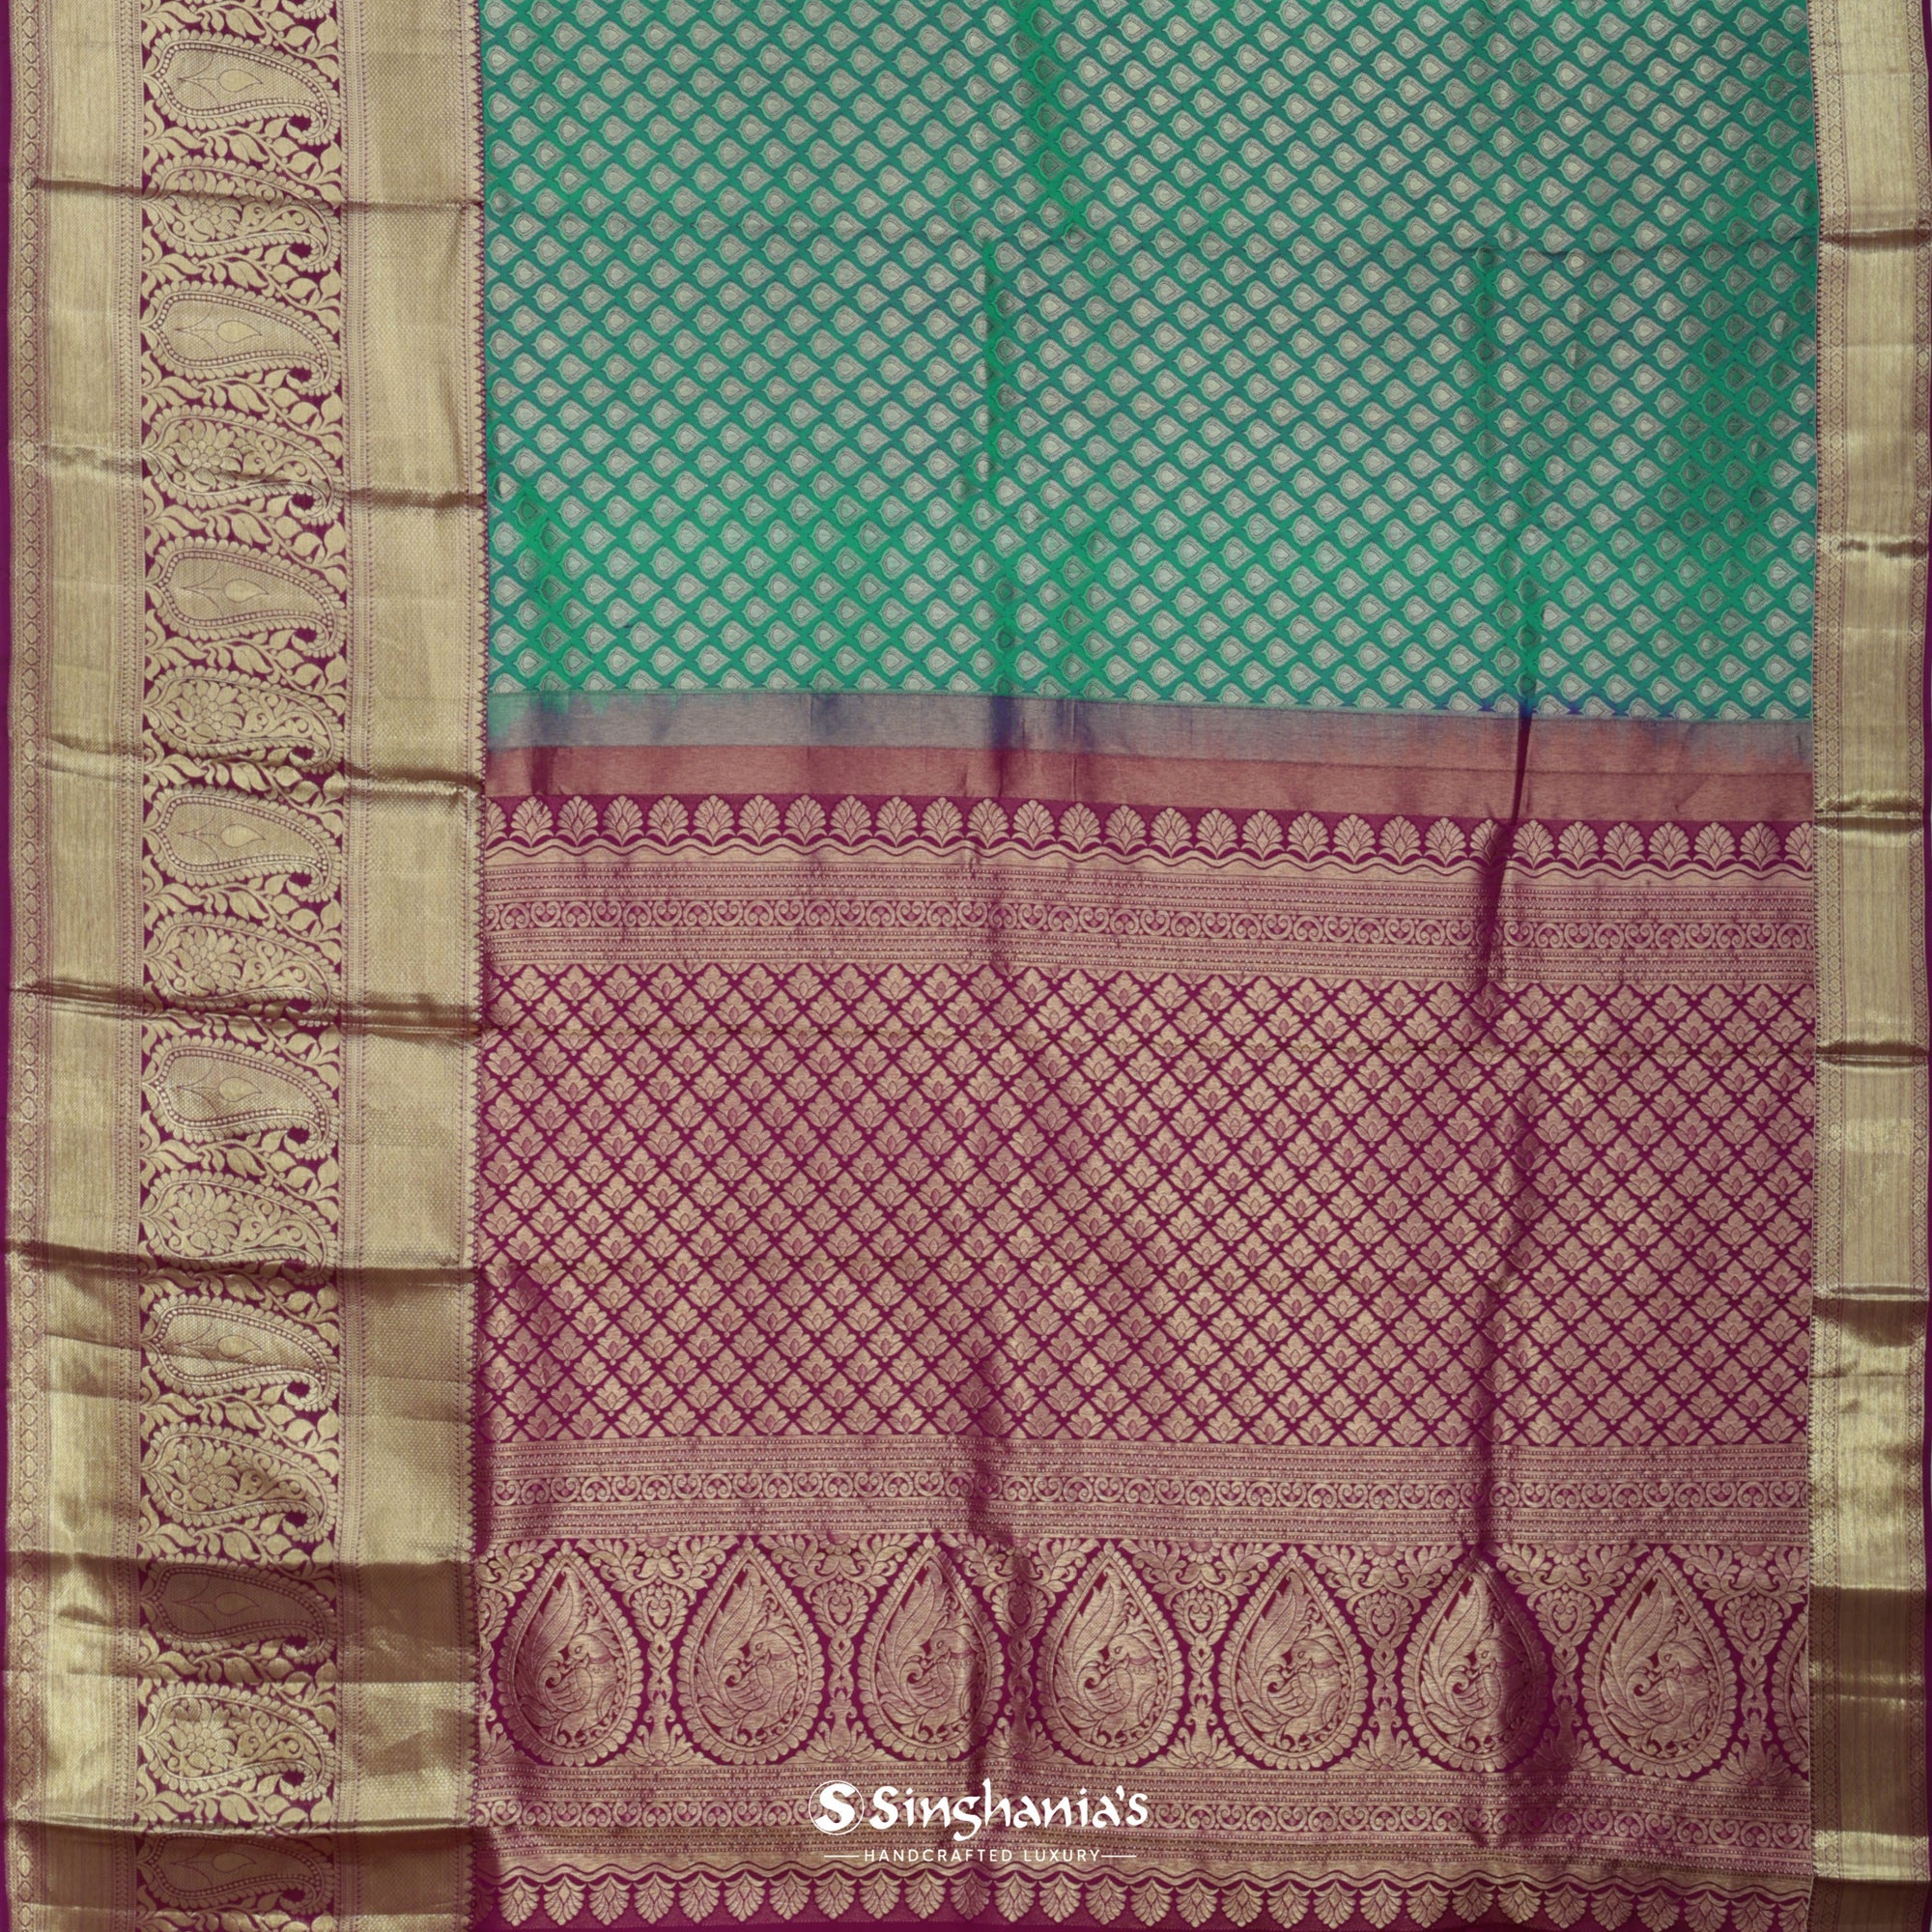 Jungle Green Kanjivaram Silk Saree With Floral Buttis Weaving